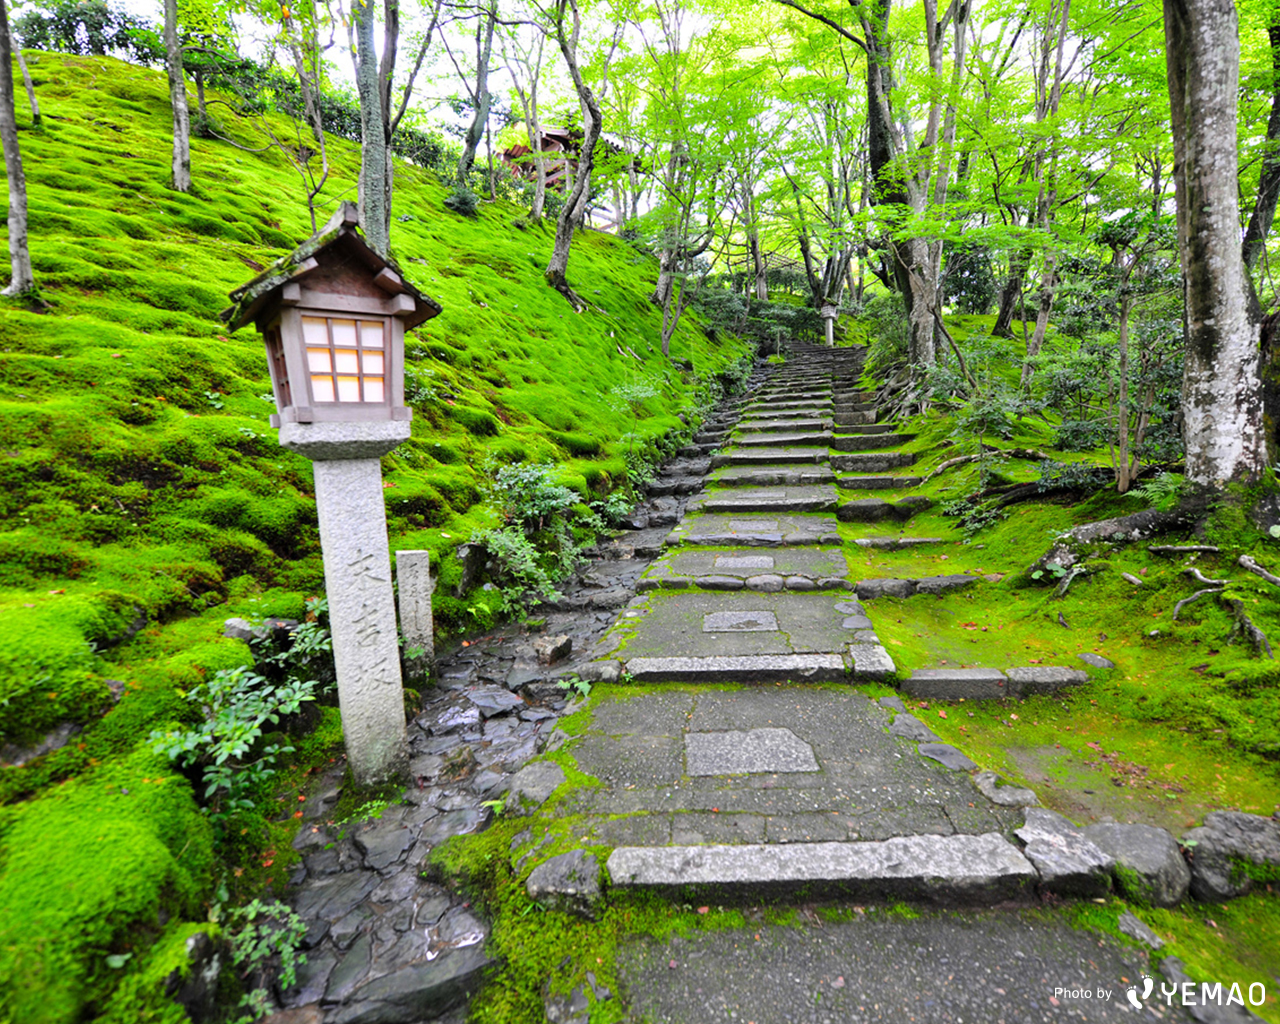 壁紙プレゼント 初夏の京都 風景写真選 Starthome